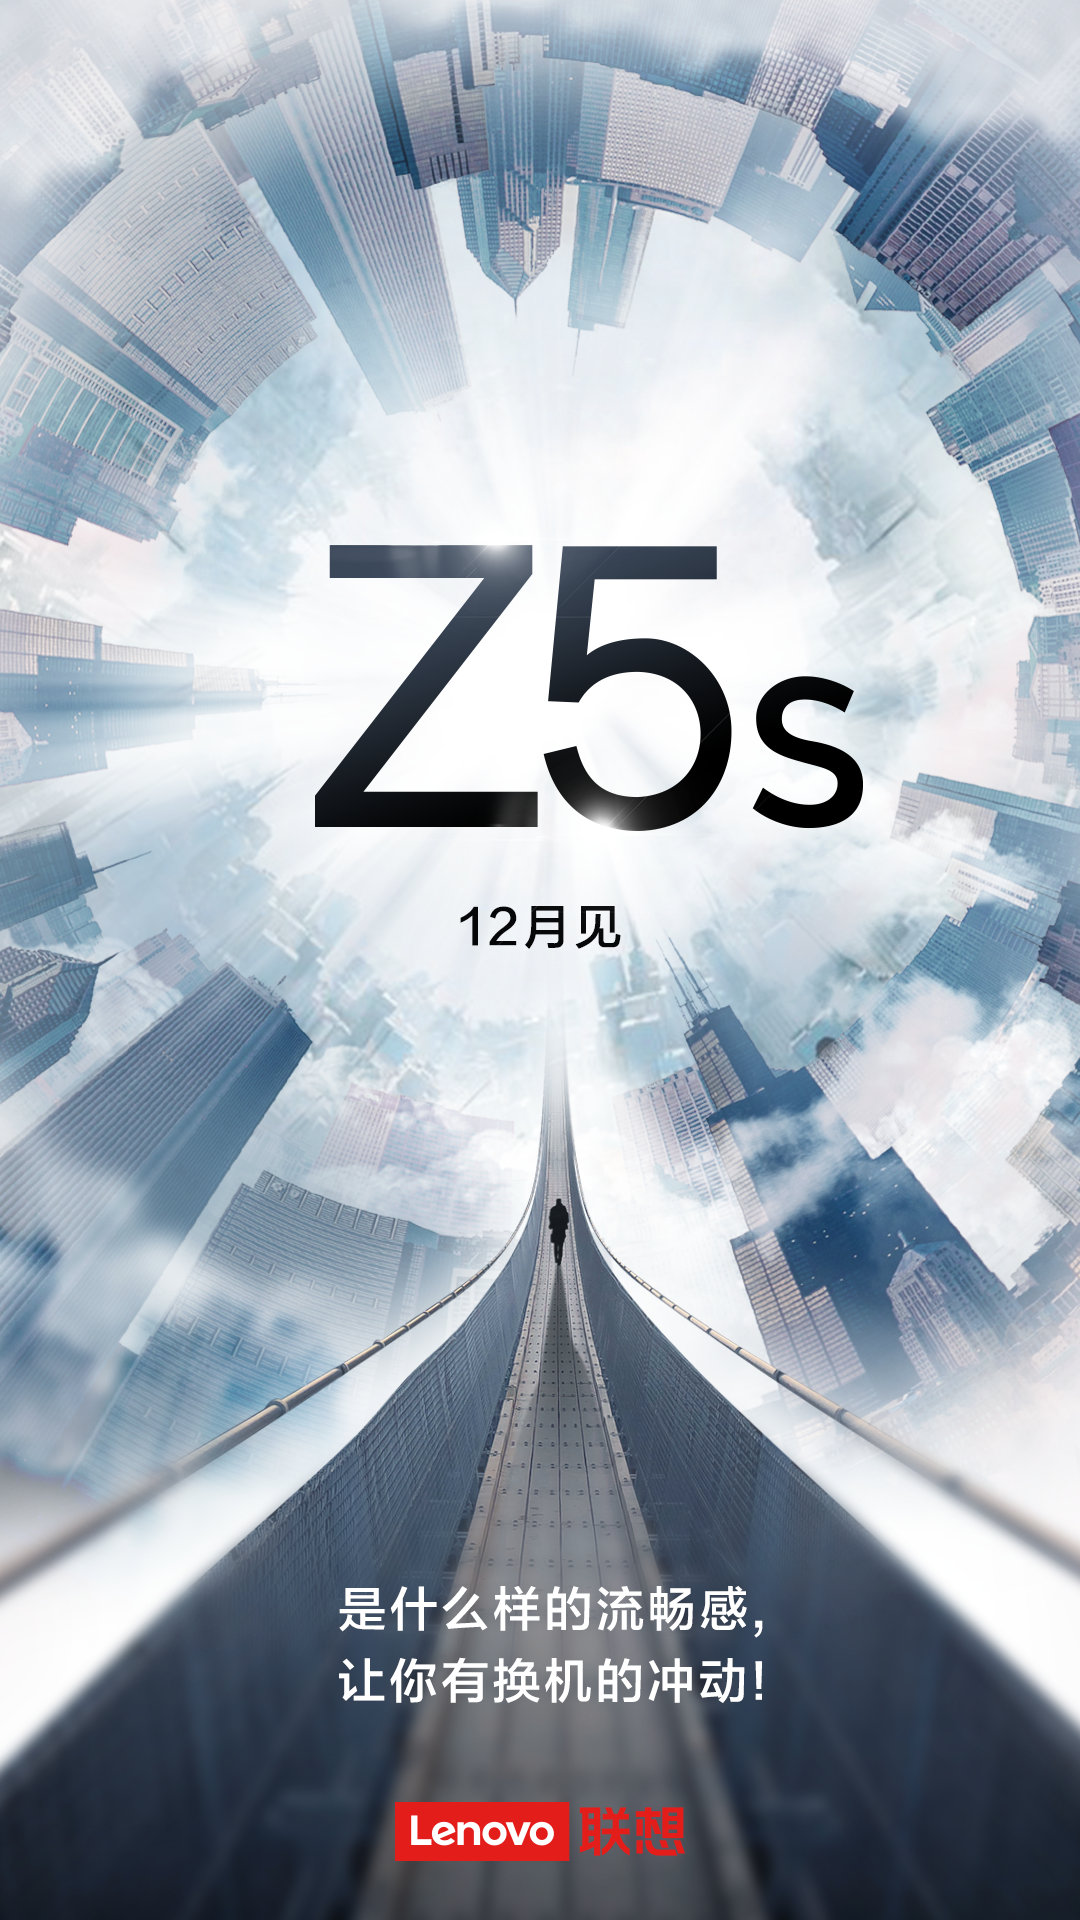 想到官方宣布新手机Z5s没碰瓷党有点儿不习惯！此次要玩什么游戏顺畅感